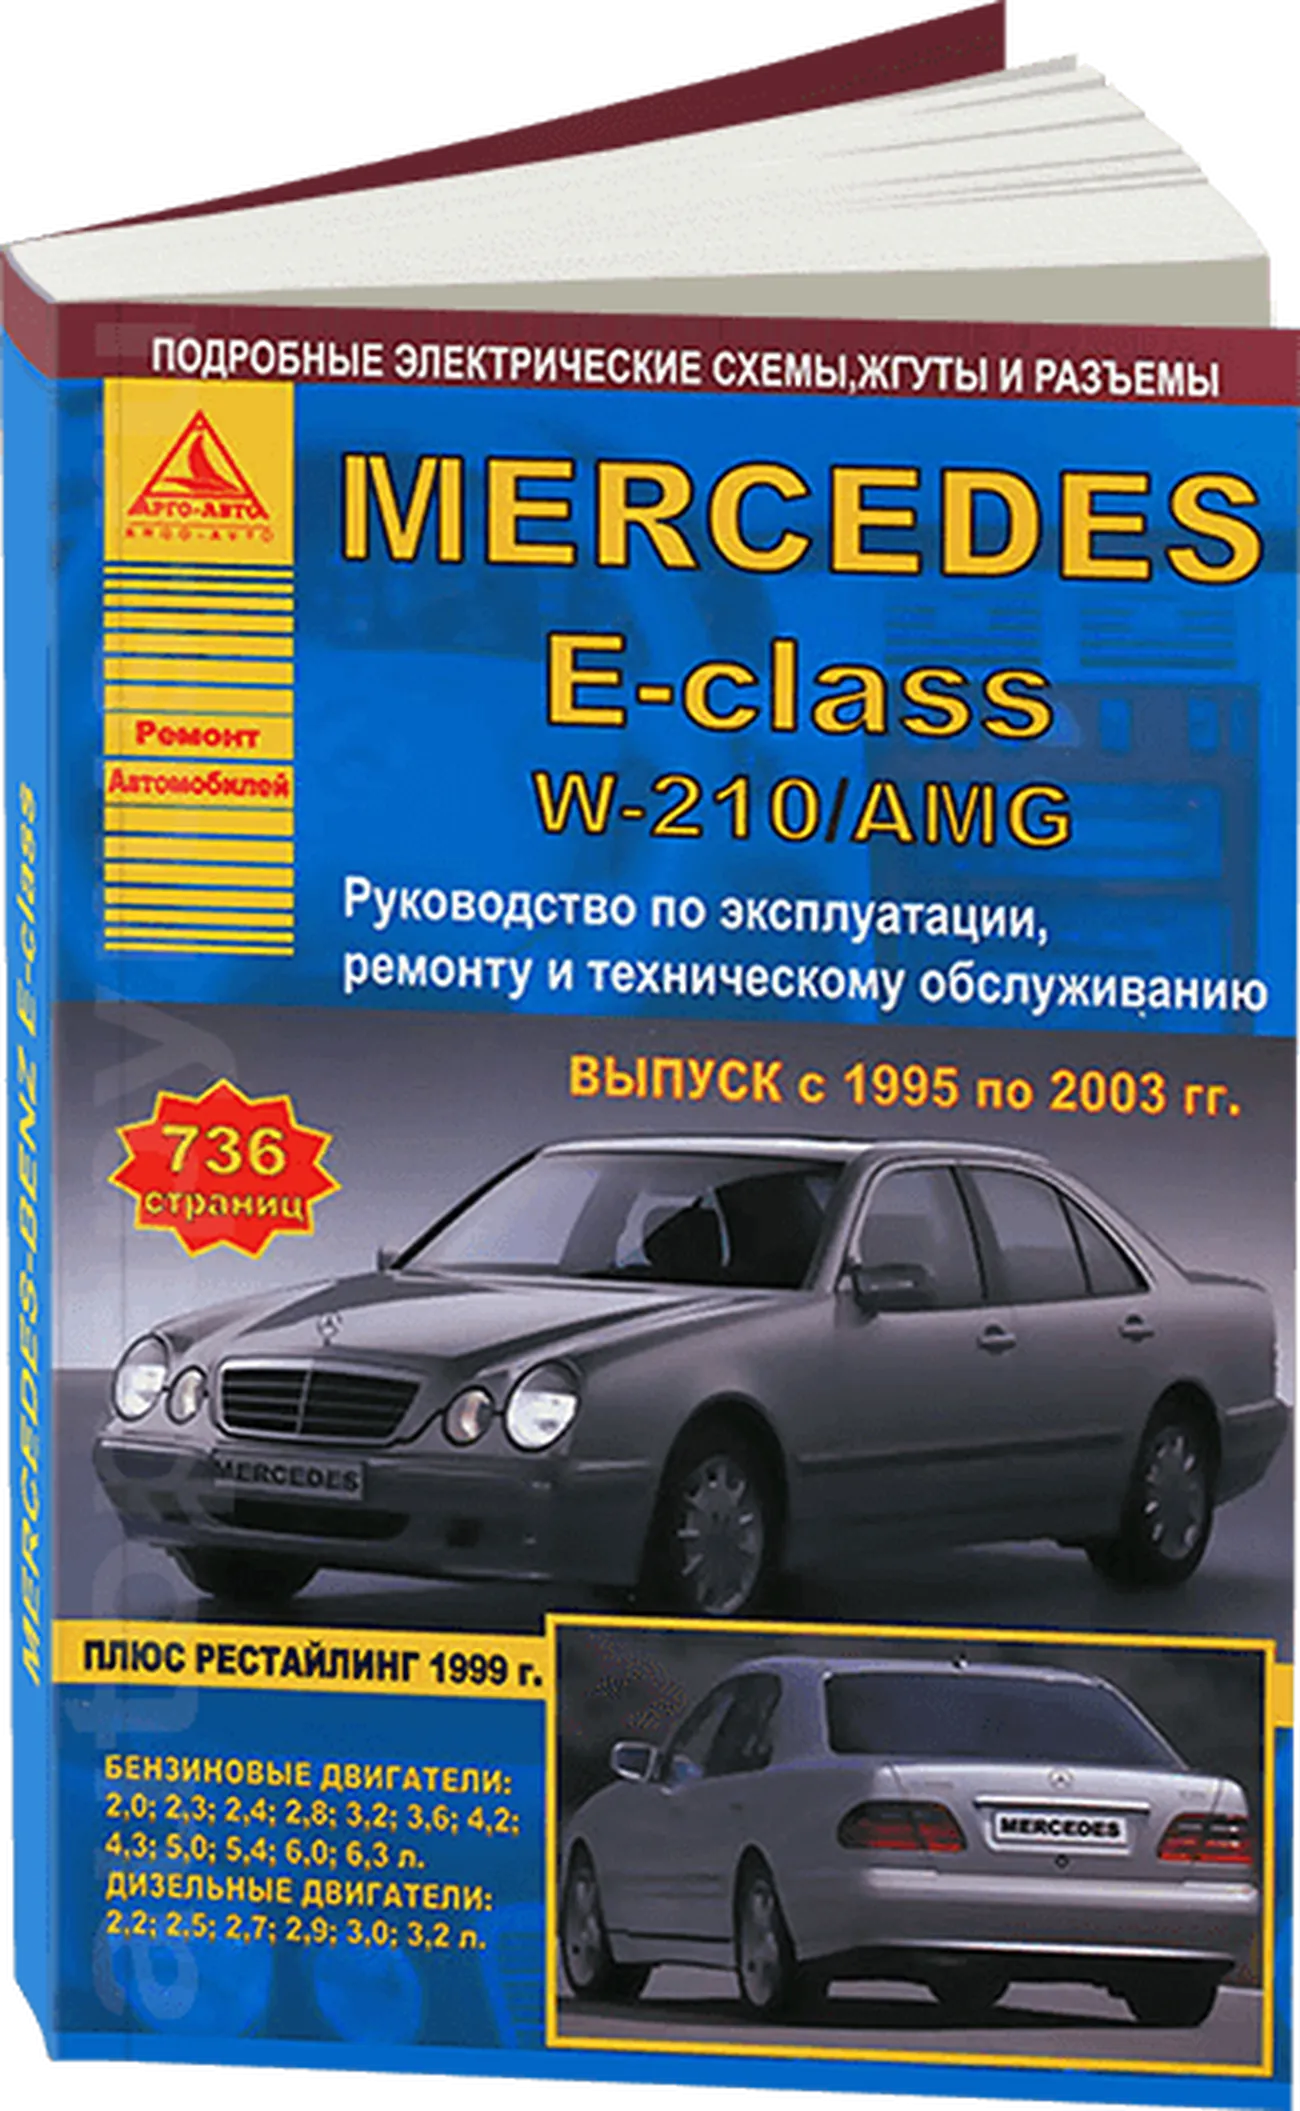 Книга: MERCEDES-BENZ E класс (W-210) (б , д) 1995-2003 г.в., рем., экспл., то | Арго-Авто